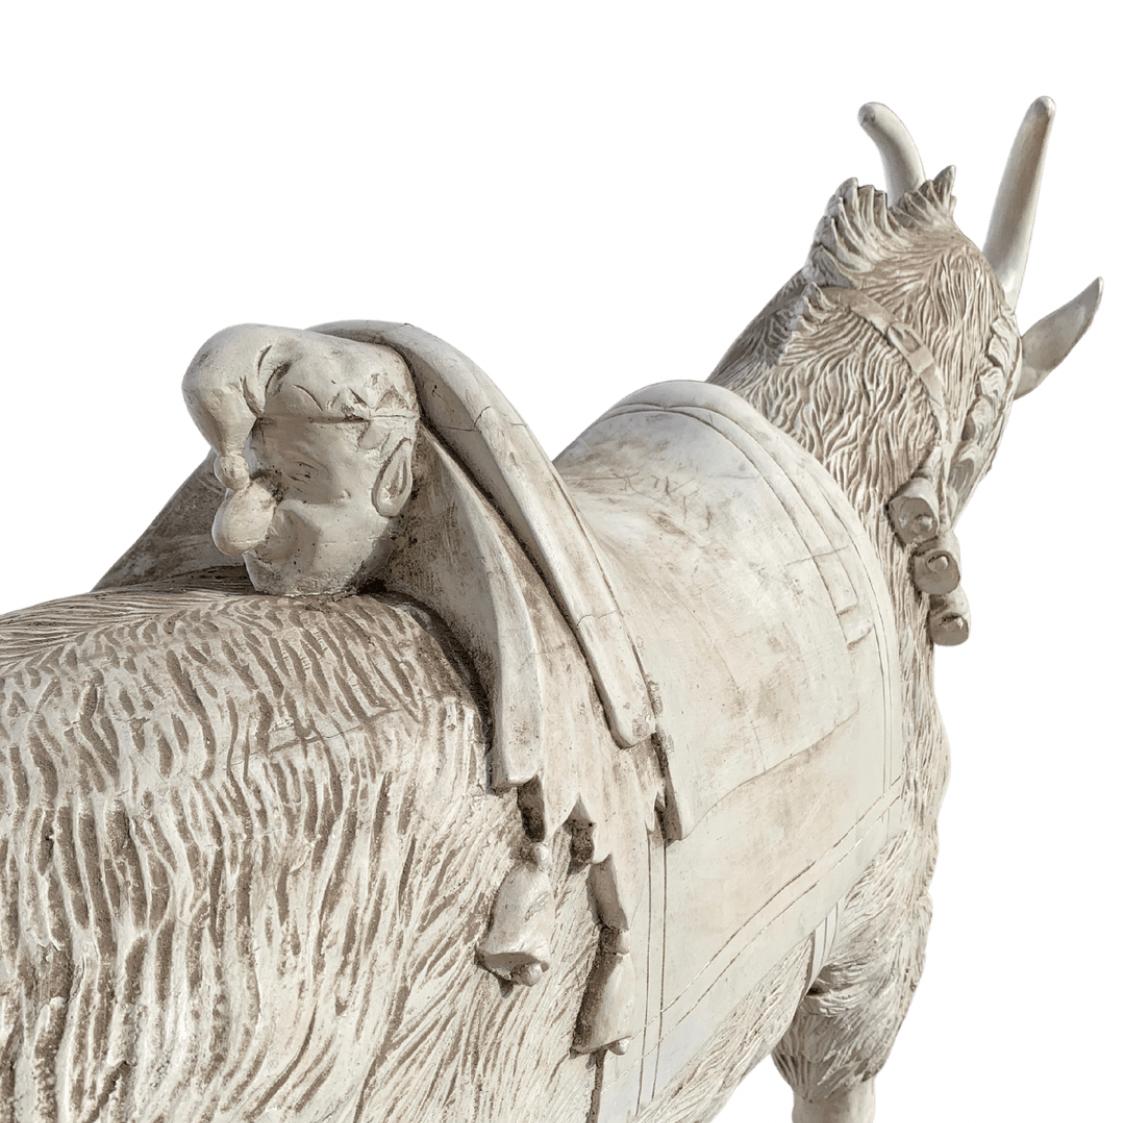 Chèvre de carrousel en bois de grande taille dans le style de Daniel Charles Muller.
Punchinello sculpté dans le dos de la selle.
Guignol était l'un des personnages les plus populaires du début du siècle, connu de la plupart des enfants.
A.I.C.